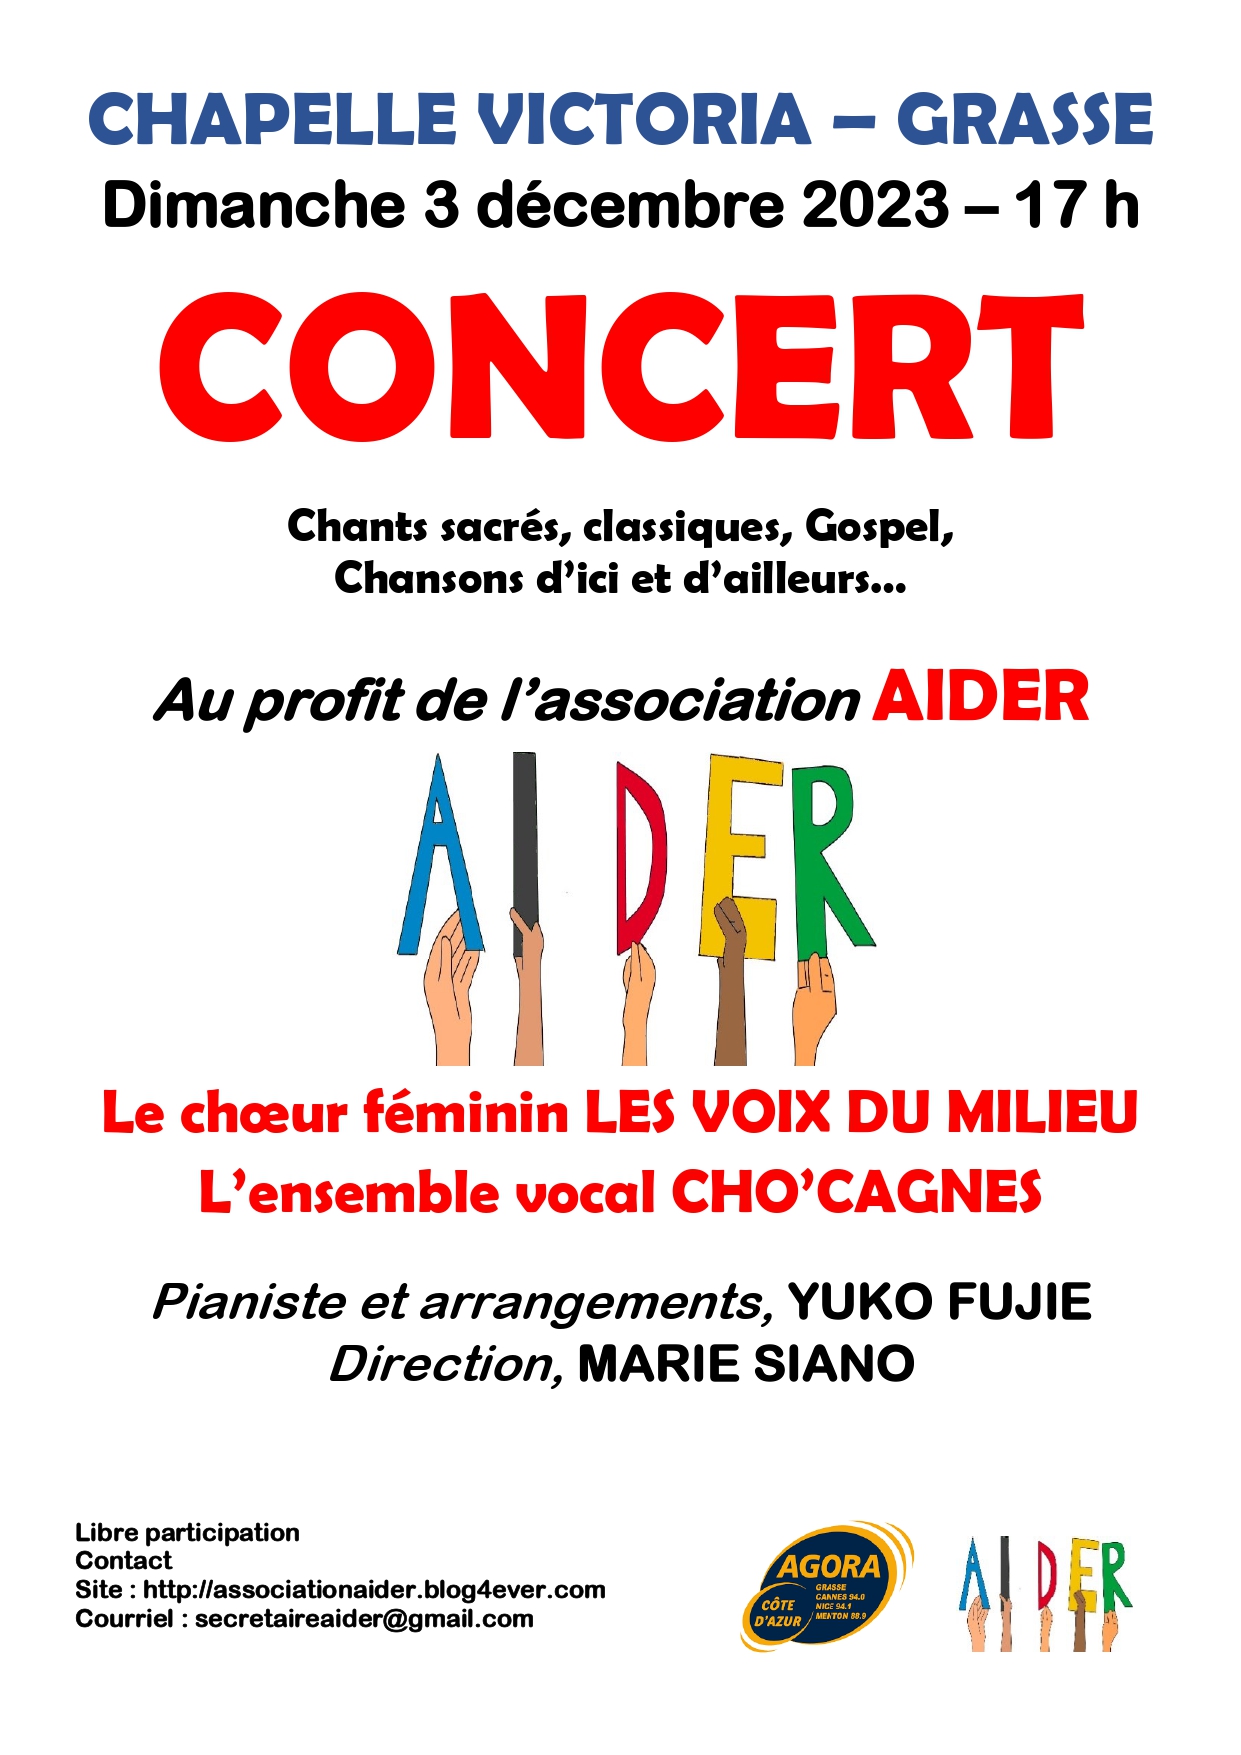 Affiche du concert du 3 décembre 2023 à la Chapelle Victoria, au profit de l'association AIDER Le choeur féminin les voix du milieur et l'ensemble vocal Cho'cagnes